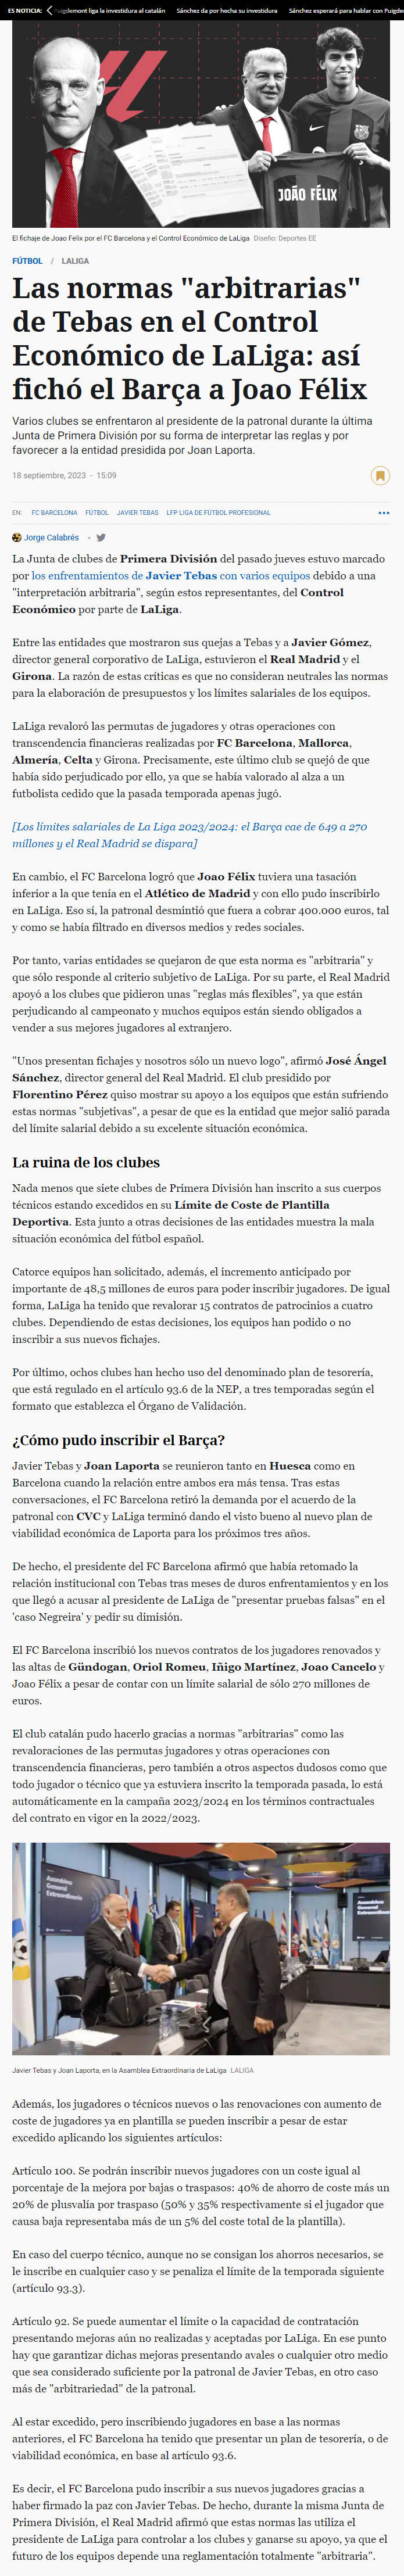 La diferencia real entre Real Madrid y Barcelona - Página 23 Untitl10